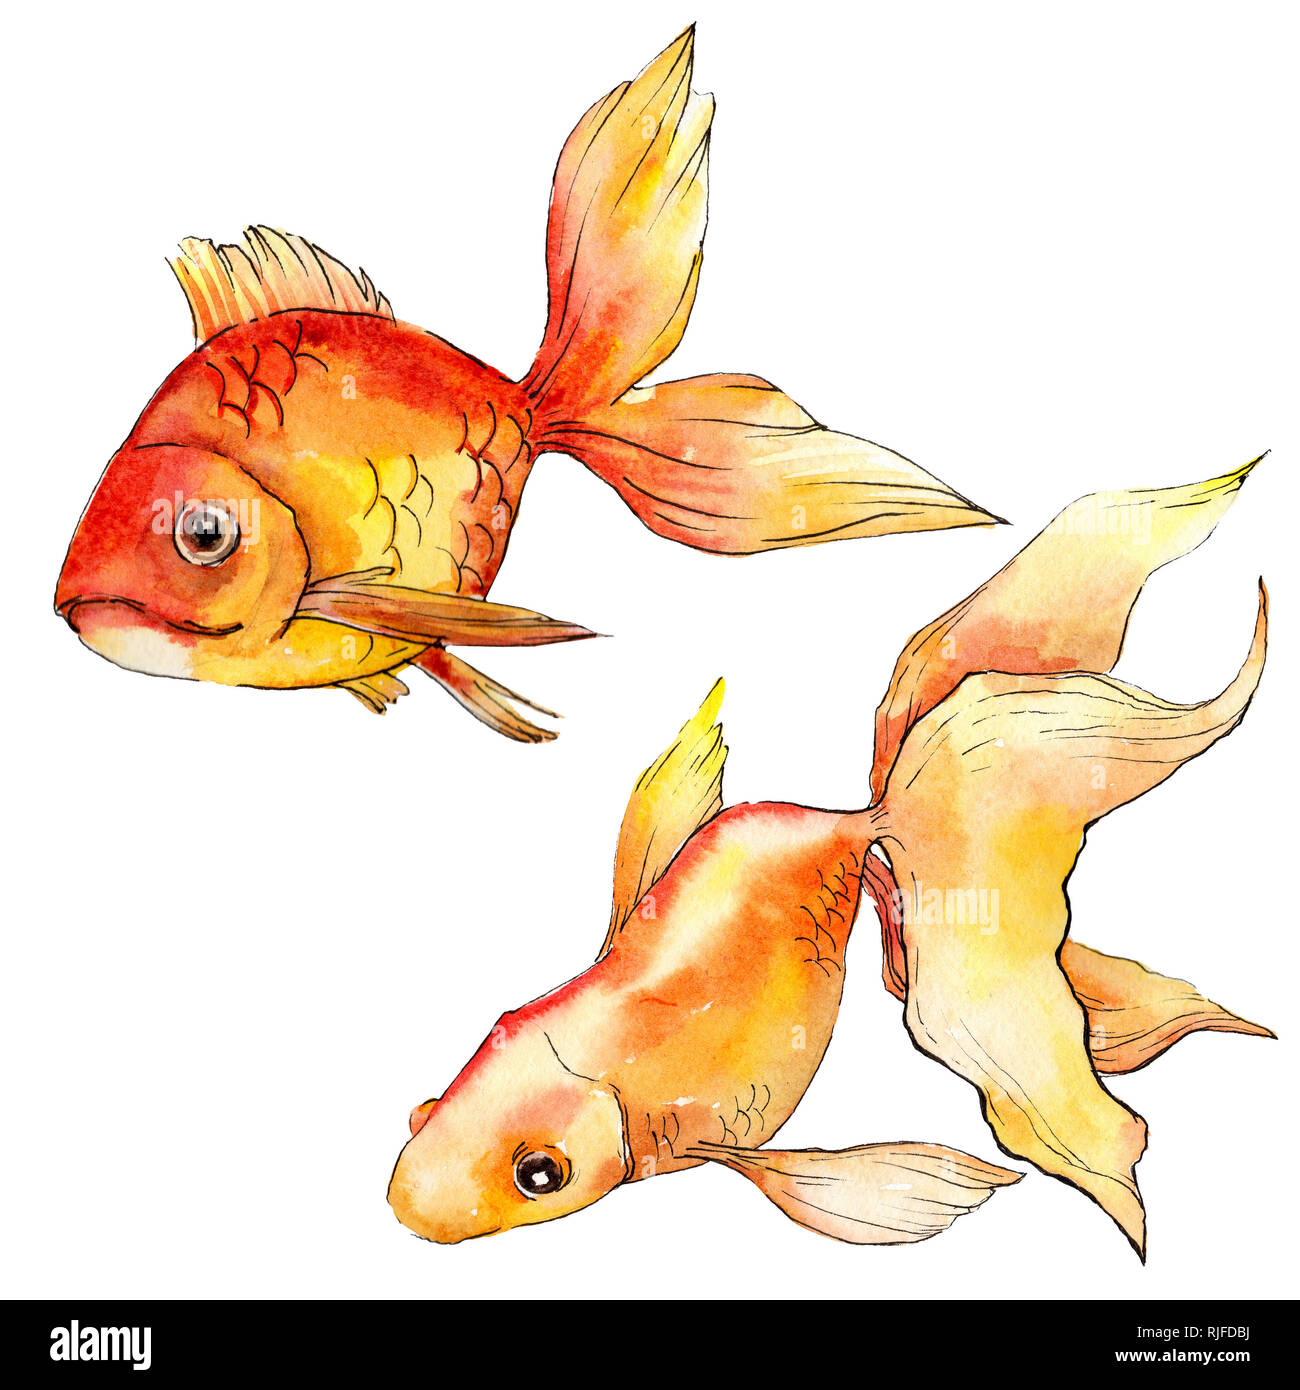 Aquarelle sous-marine aquatique poissons rouges tropicaux colorés. Mer Rouge et poissons exotiques à l'intérieur. Illustration d'arrière-plan. Aquarelle Dessin fashi Banque D'Images